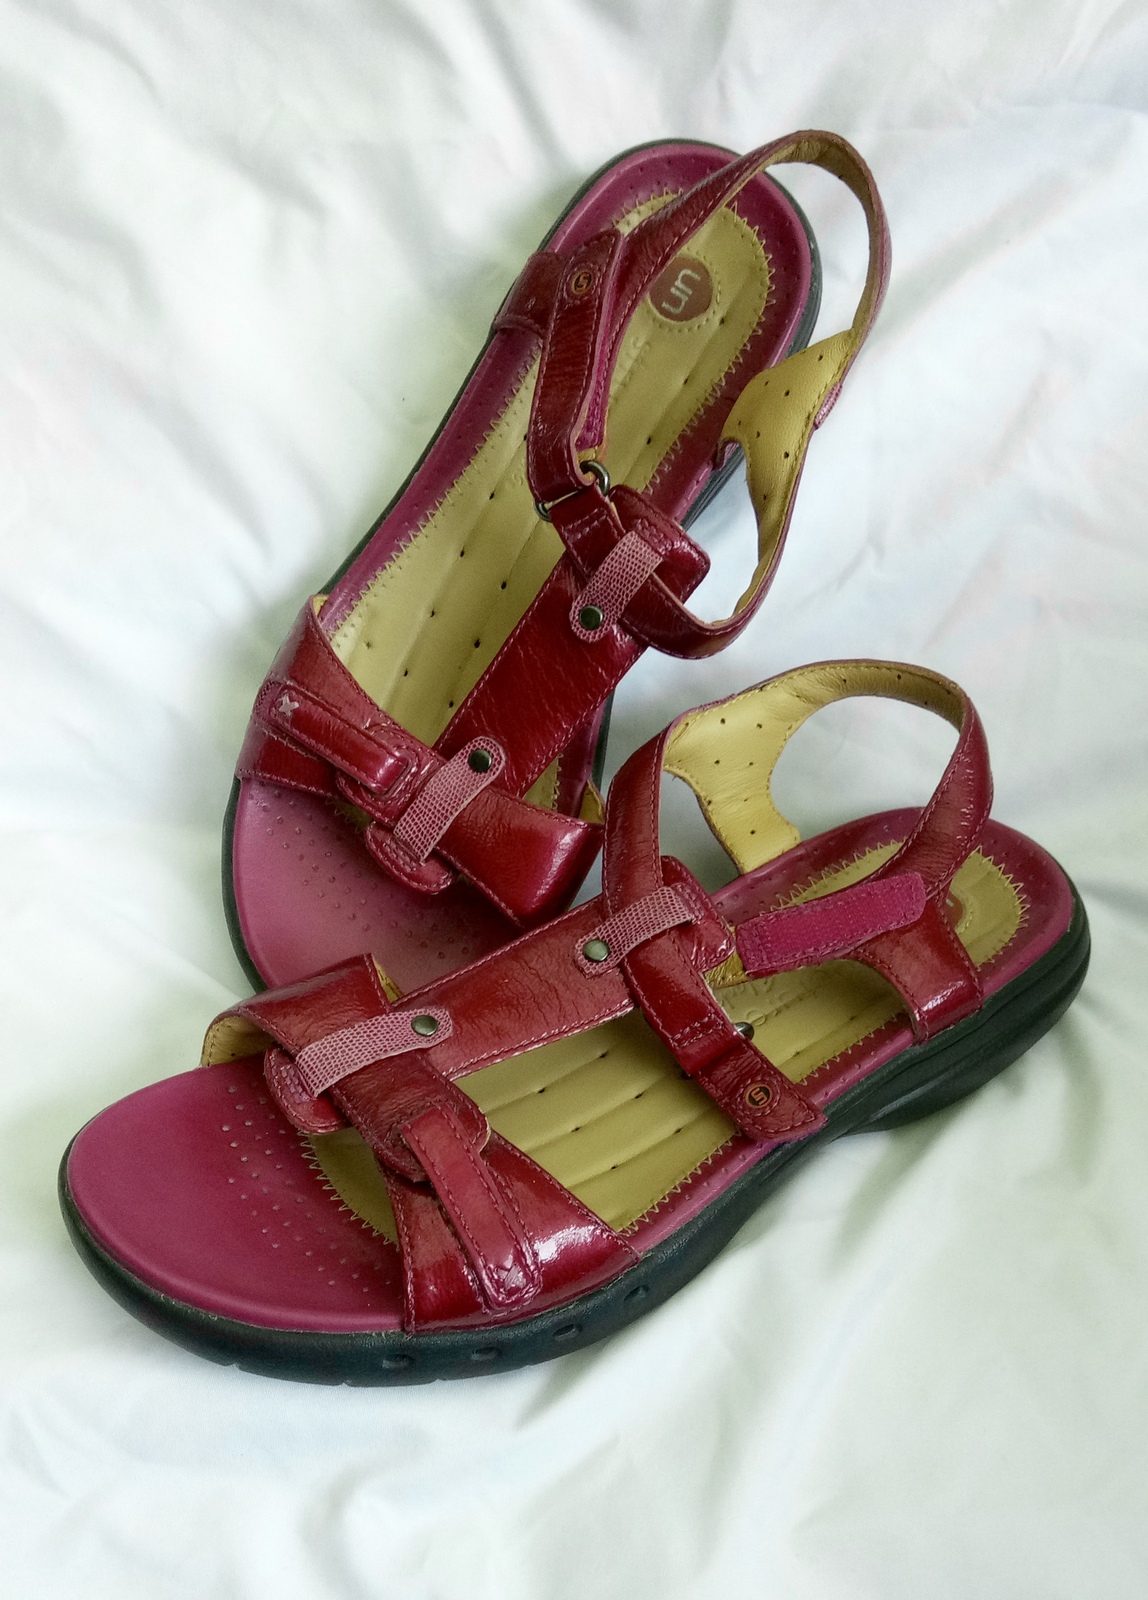 clarks unstructured artisan sandals